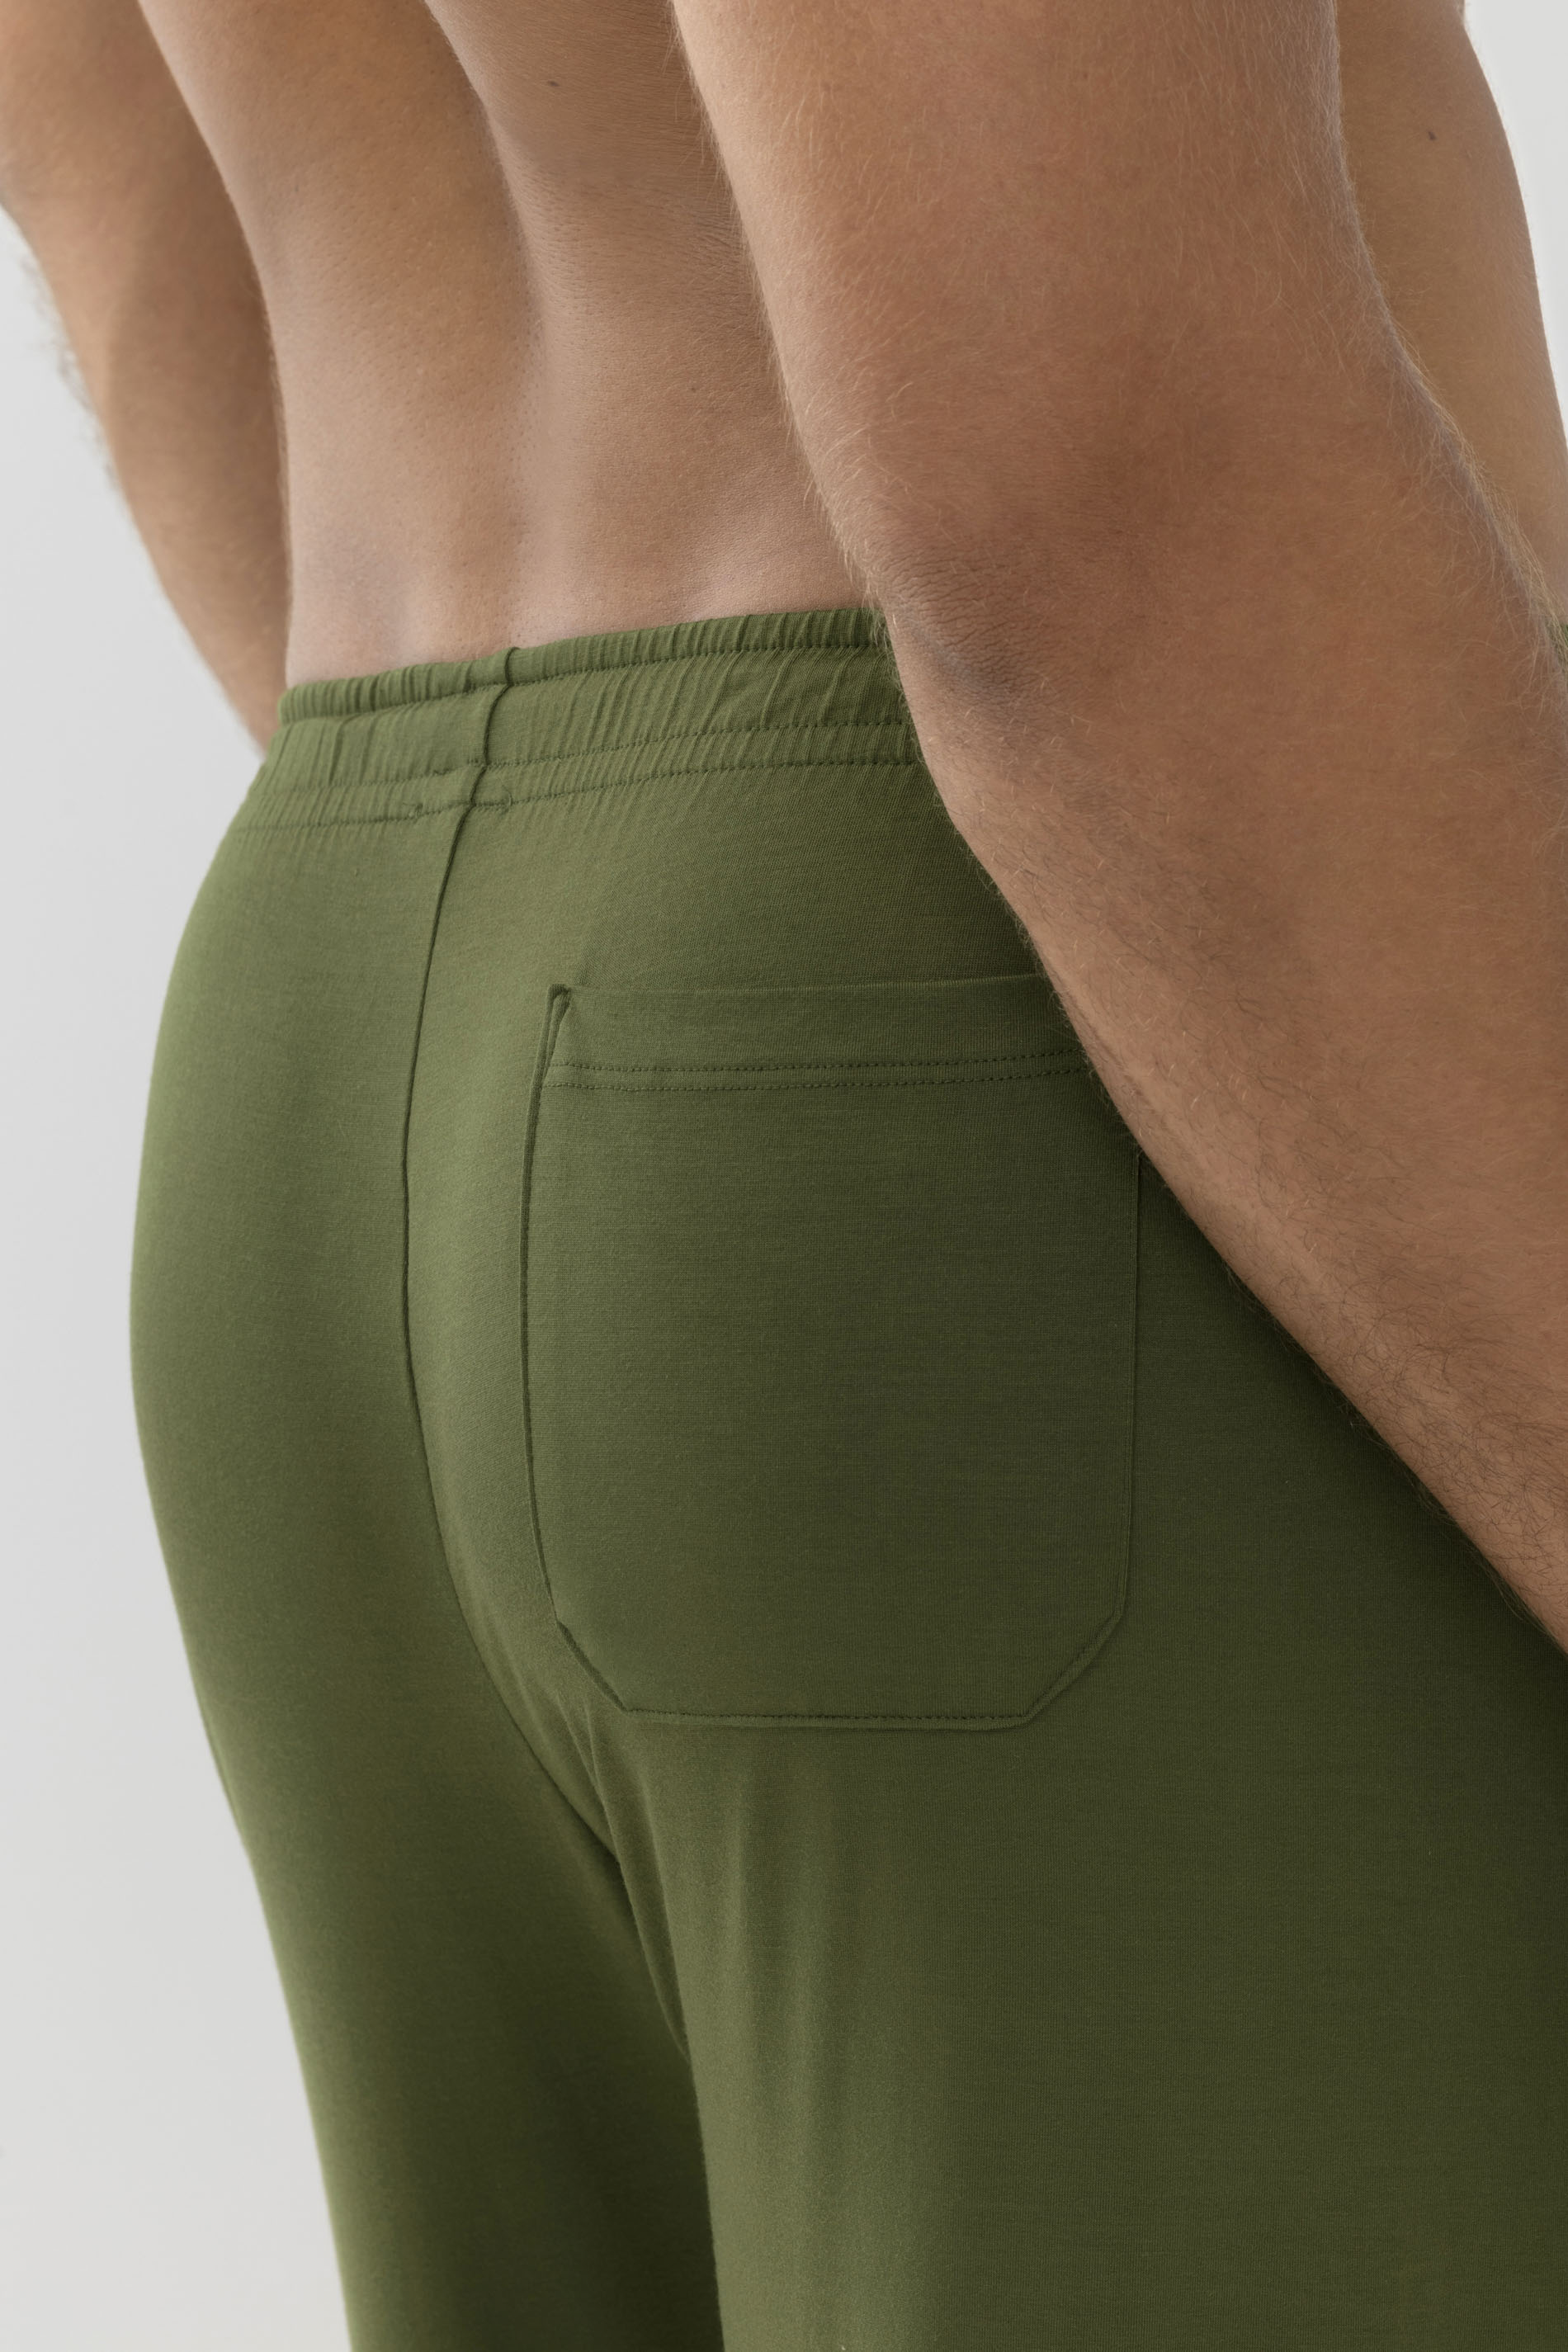 Long pants Serie Jefferson Modal Detail View 02 | mey®